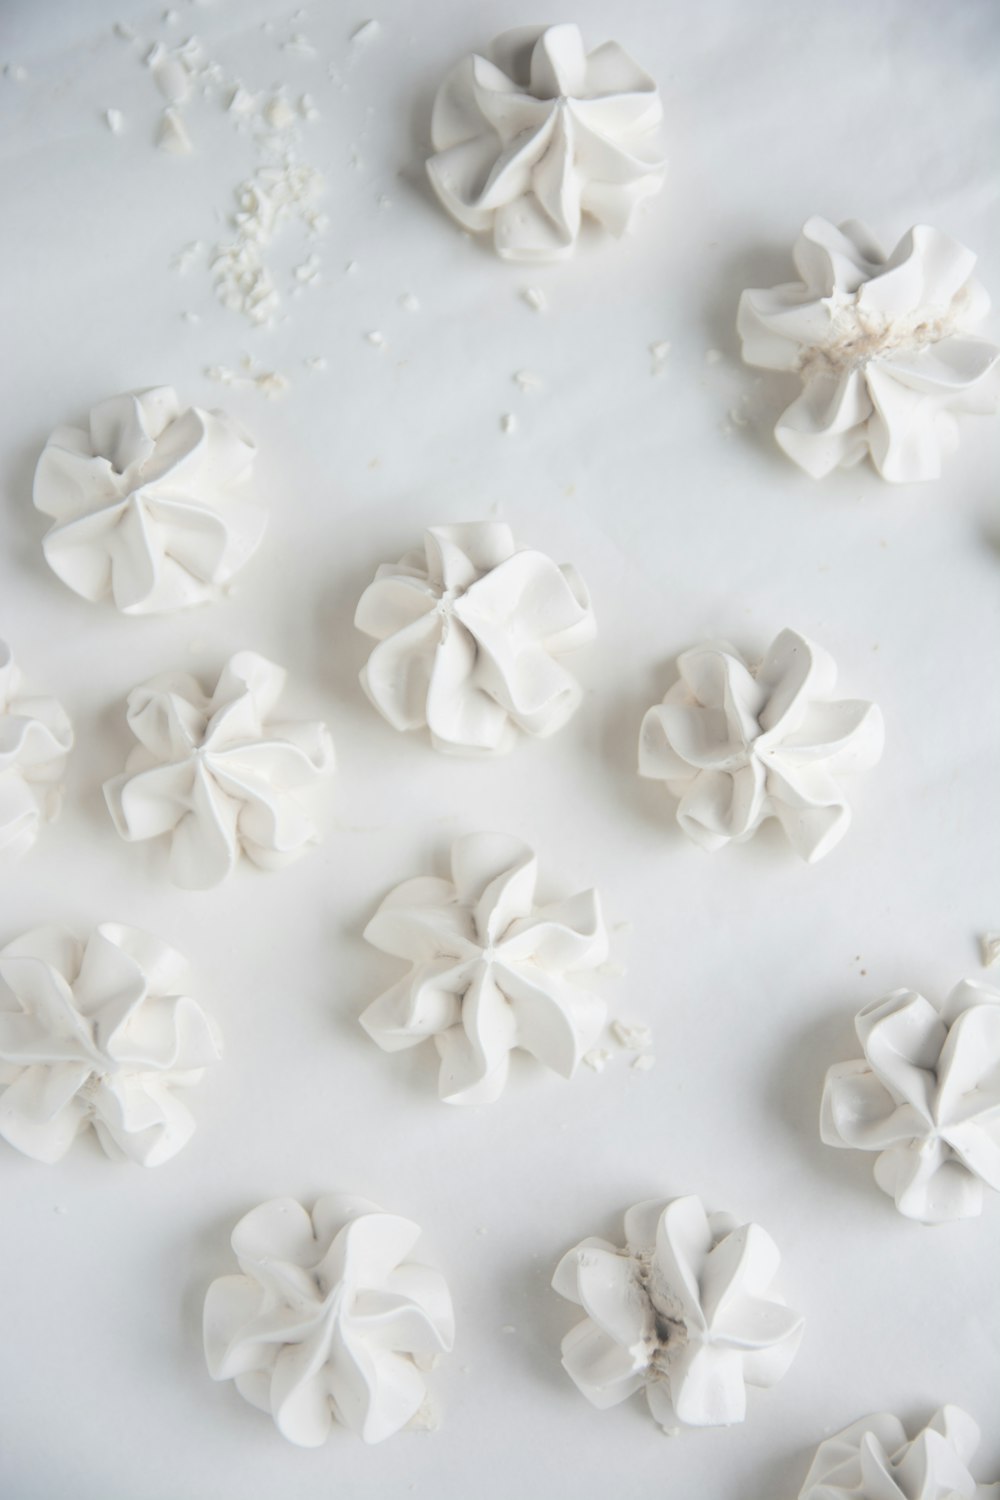 pétalos de flores blancas sobre superficie blanca